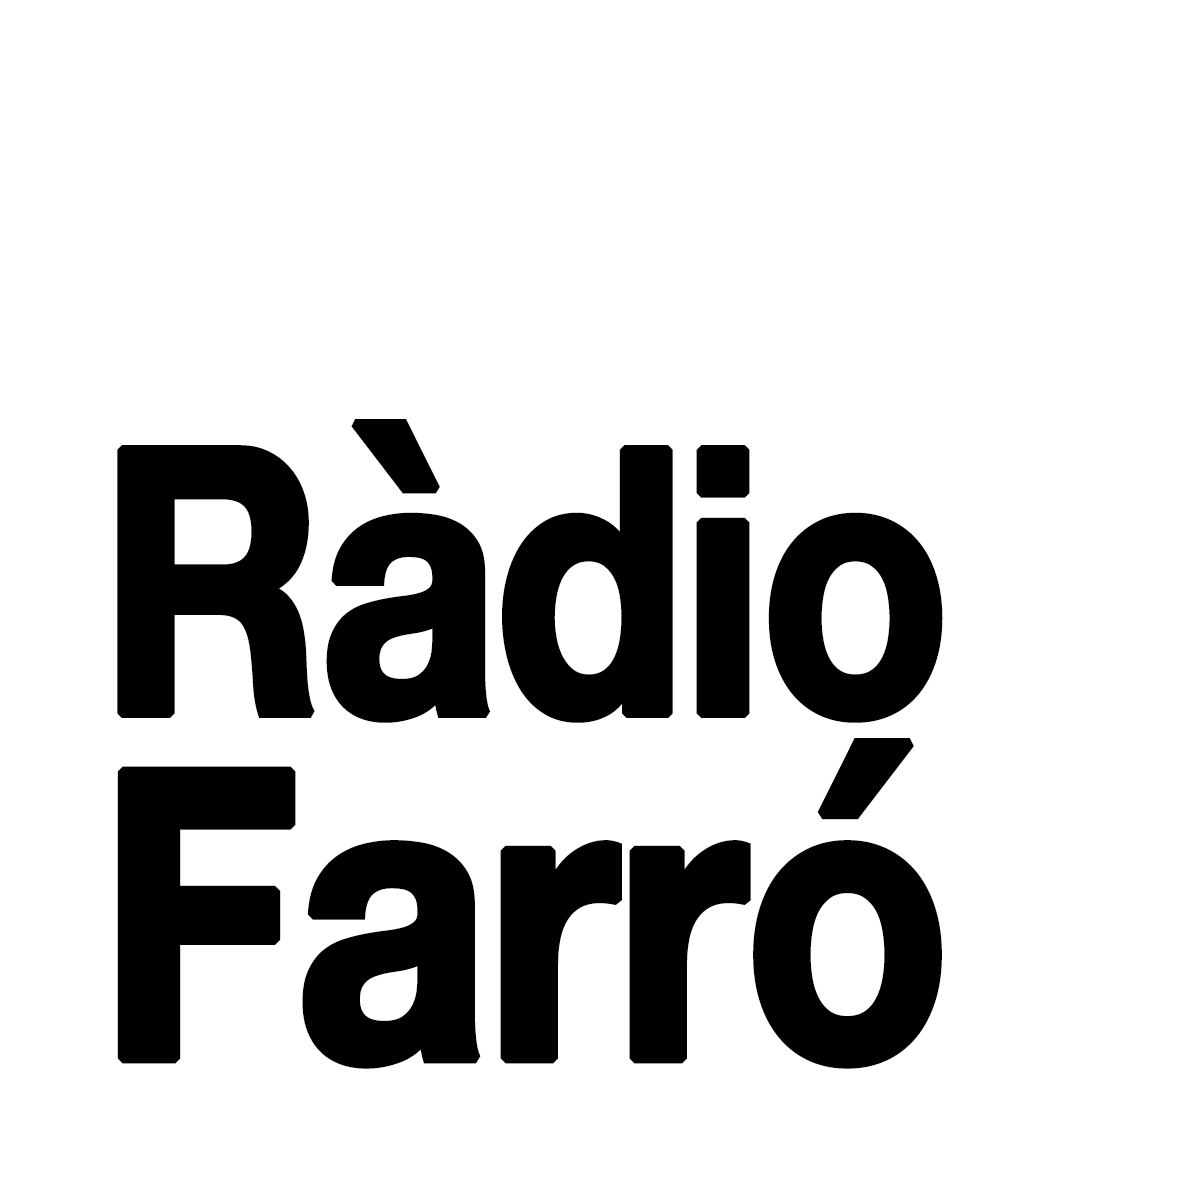 És el logo. Fons blanc amb lletres negres amb la llegenda Ràdio Farró